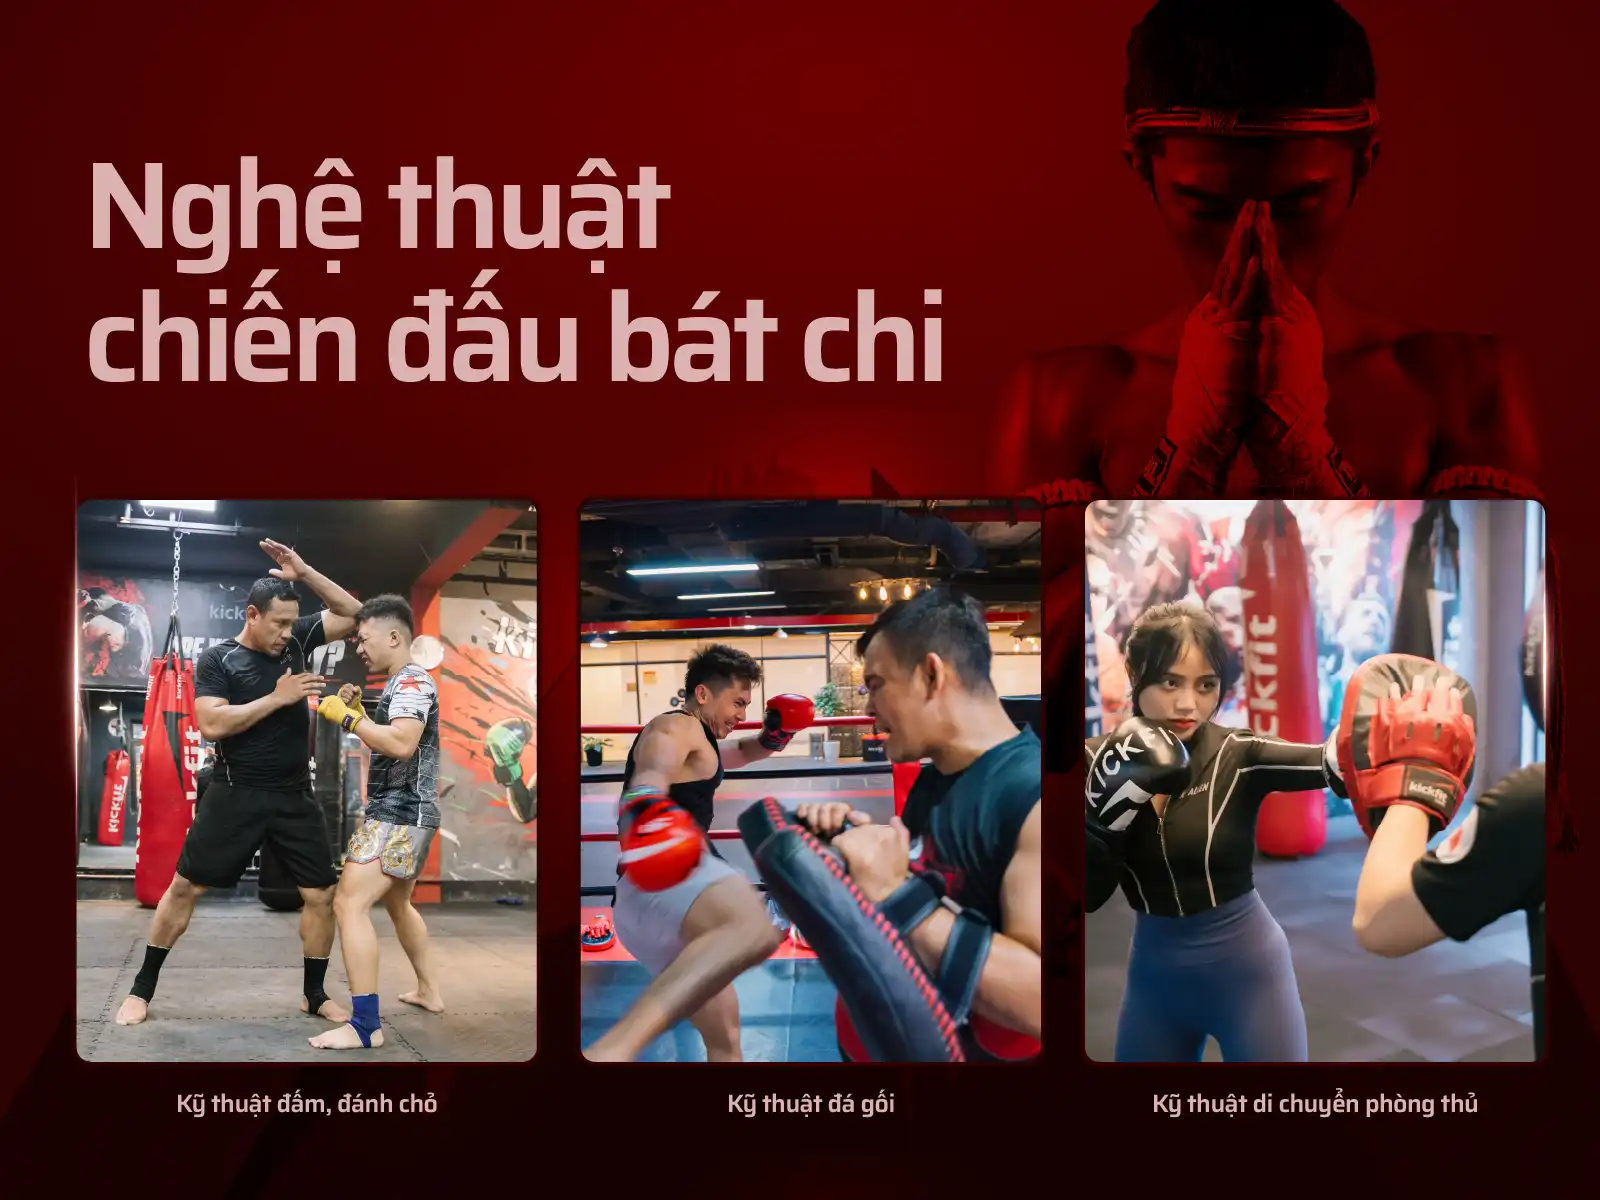 Học Muay Thái với các kỹ thuật trong "Nghệ thuật chiến đấu bát chi"